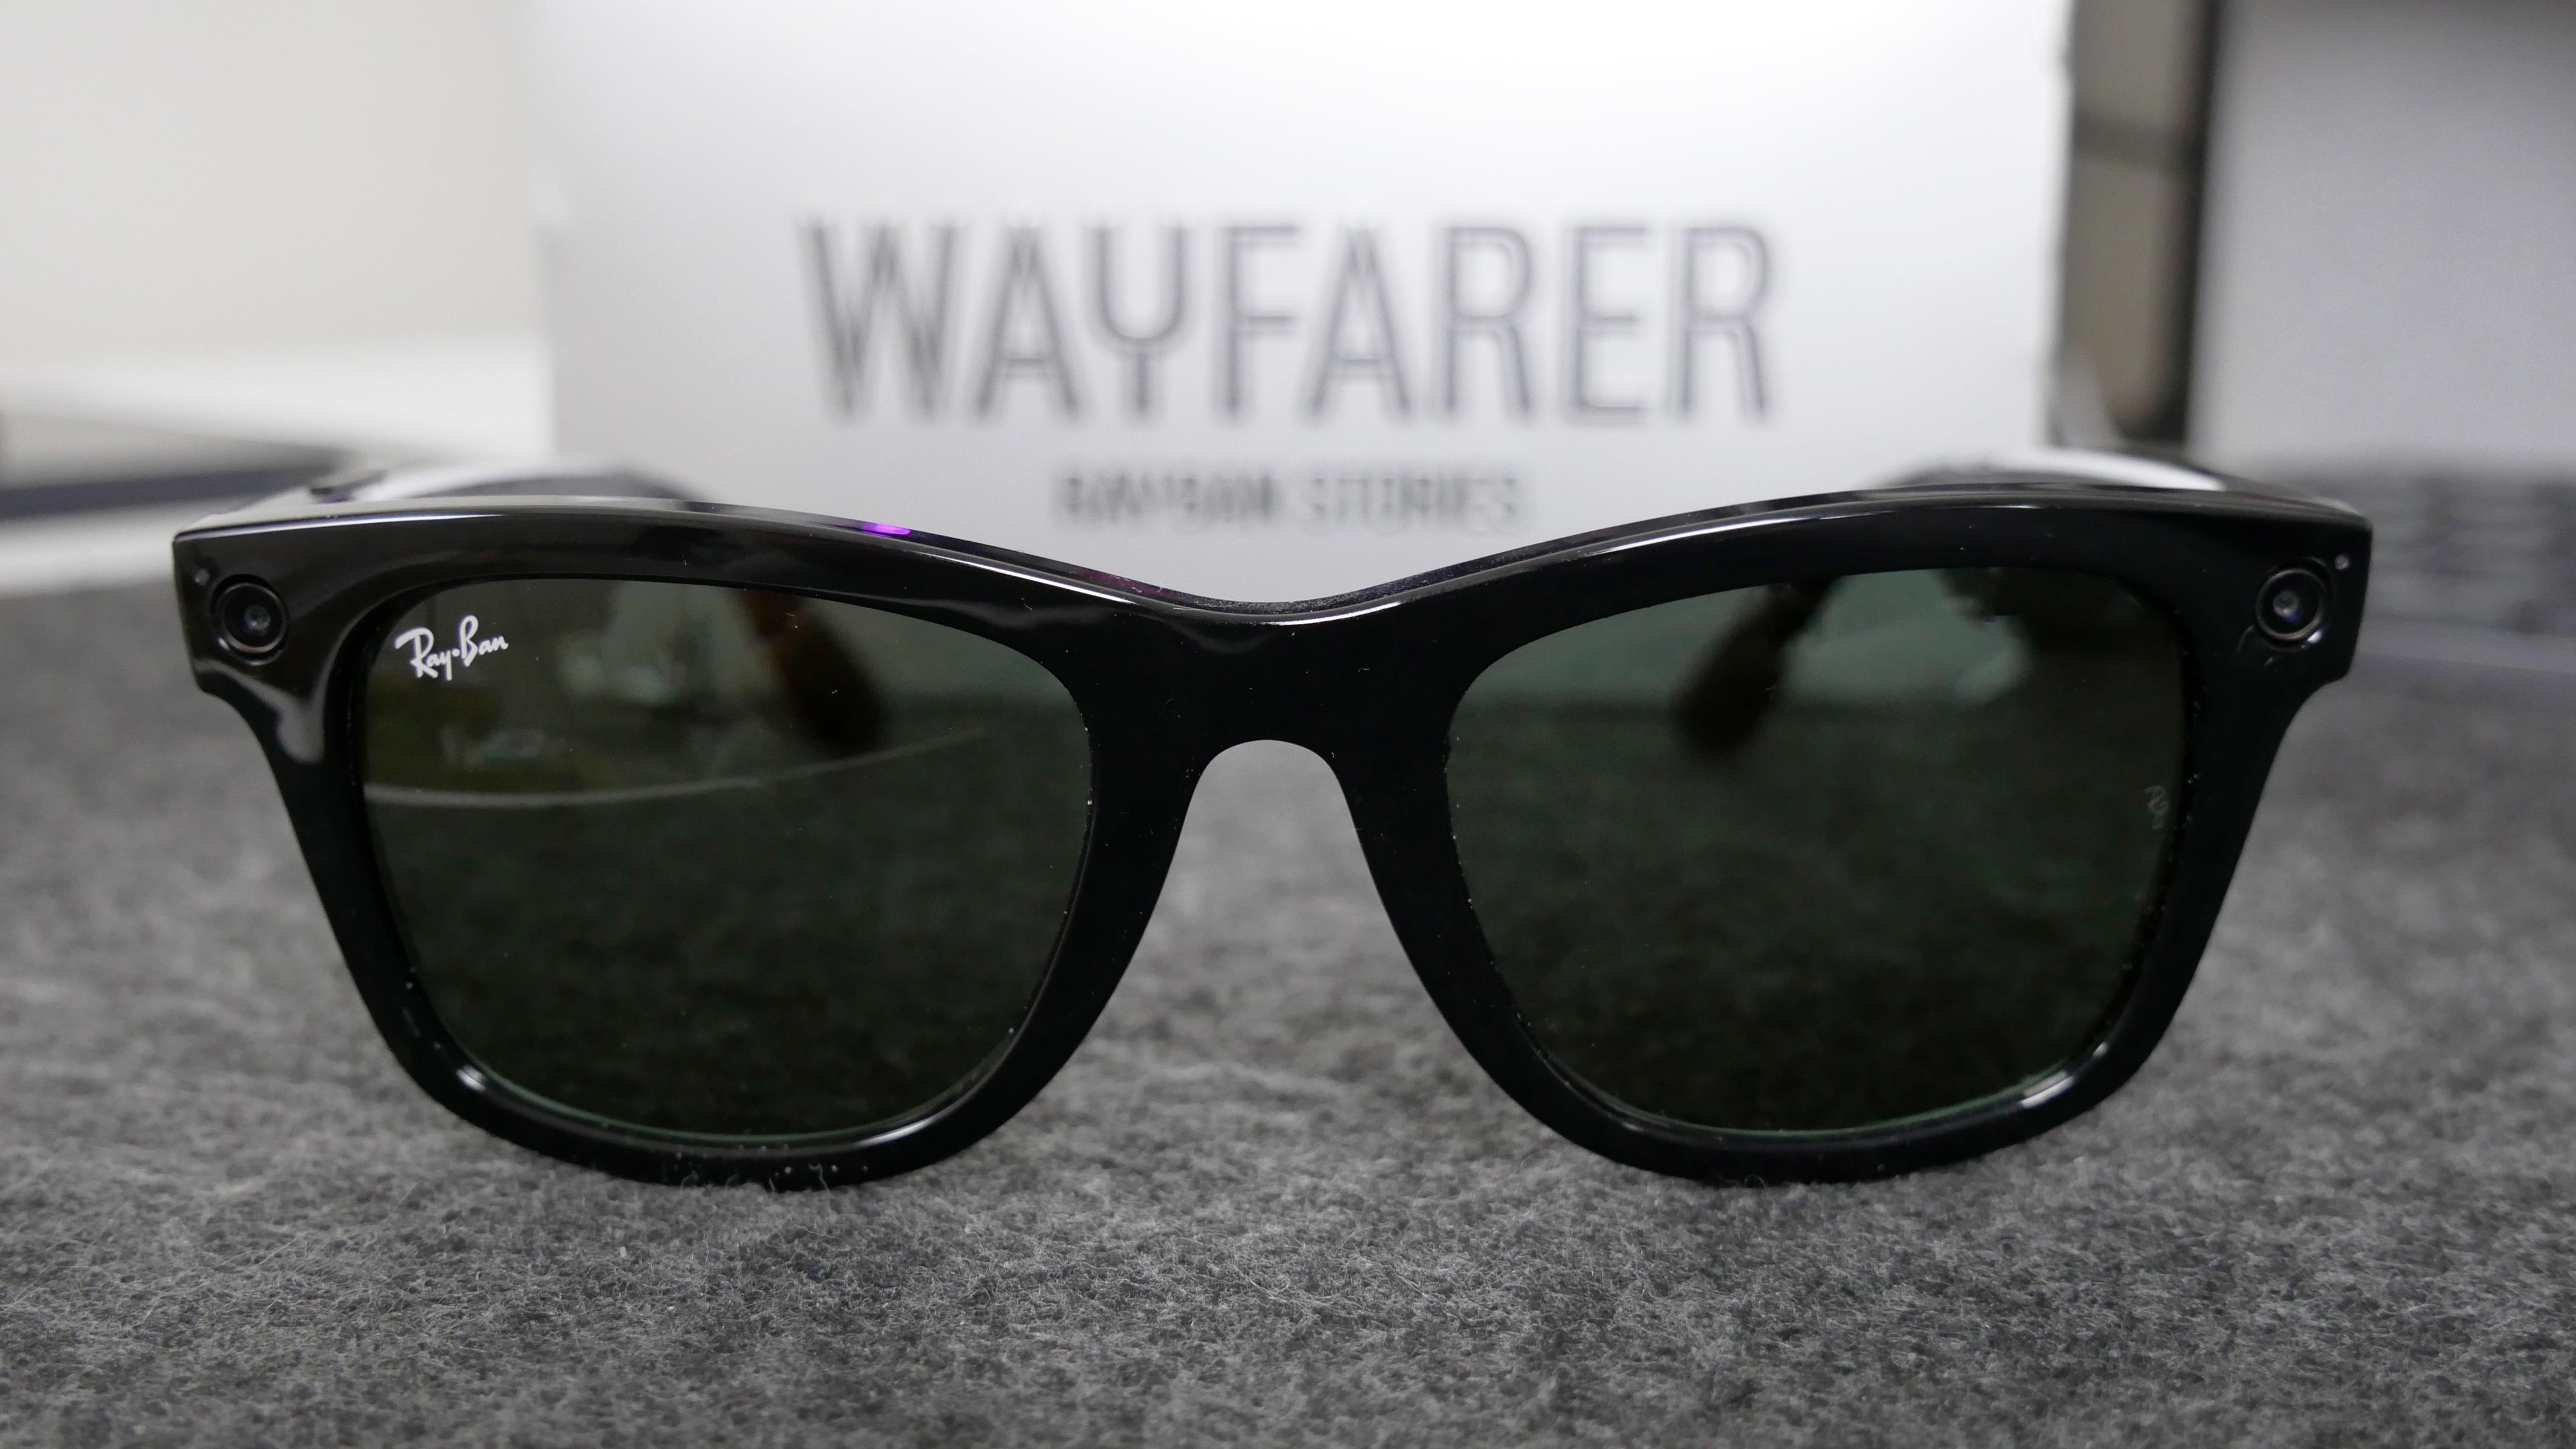 Gli smart glasses di Ray-Ban e Facebook: caratteristiche e prezzo